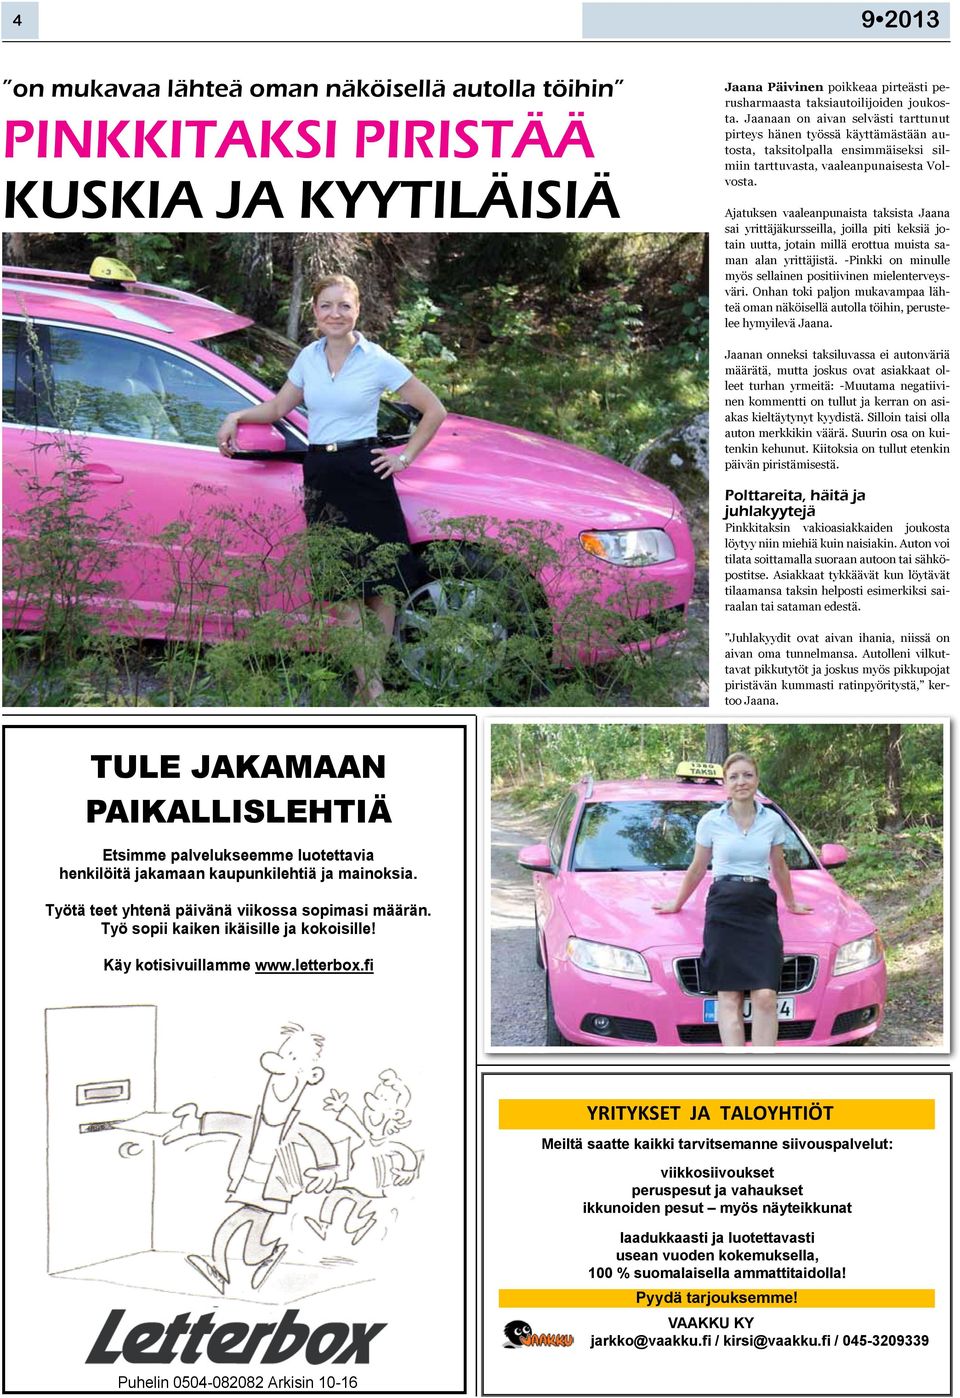 Ajatuksen vaaleanpunaista taksista Jaana sai yrittäjäkursseilla, joilla piti keksiä jotain uutta, jotain millä erottua muista saman alan yrittäjistä.